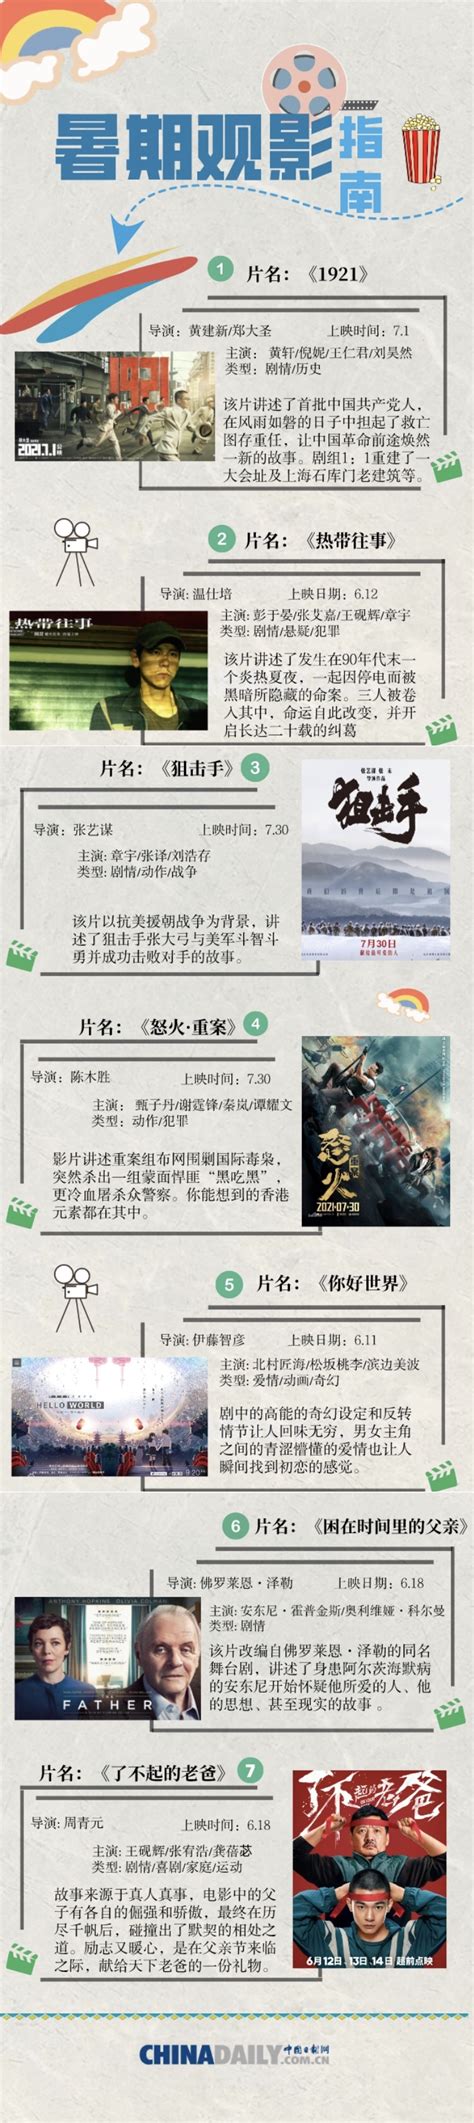 暑期档好电影不容错过 - 中国日报网